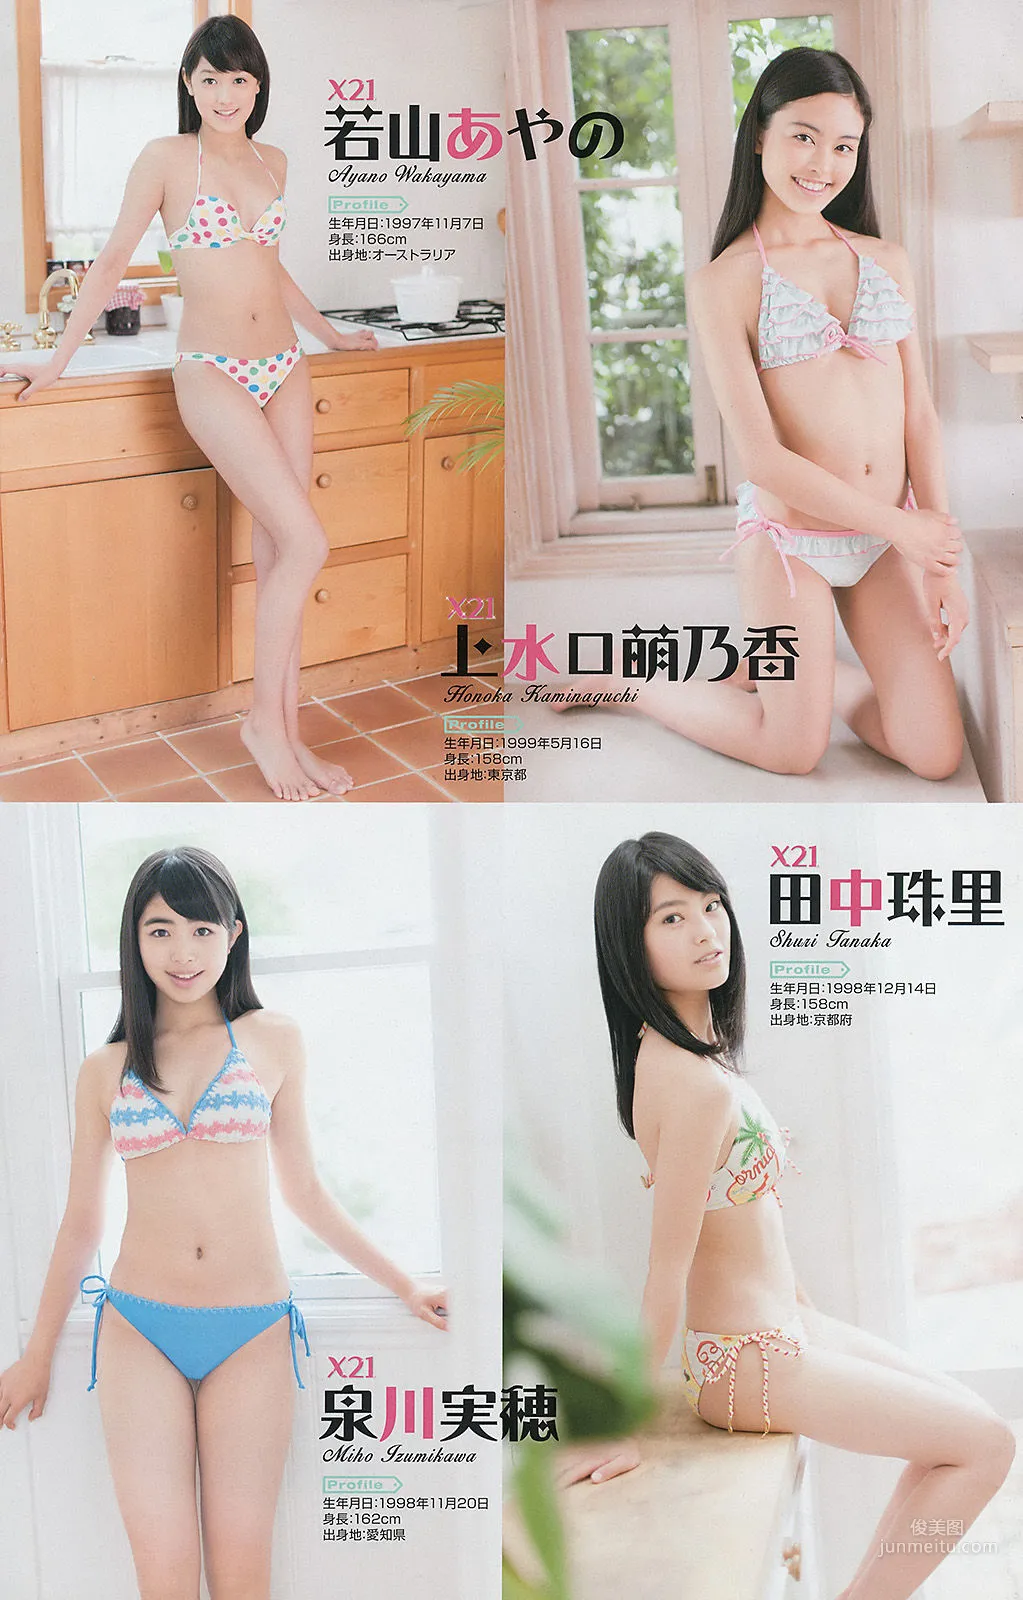 [Young Gangan] 古畑奈和 X21 山地まり 2014年No.15 写真杂志16